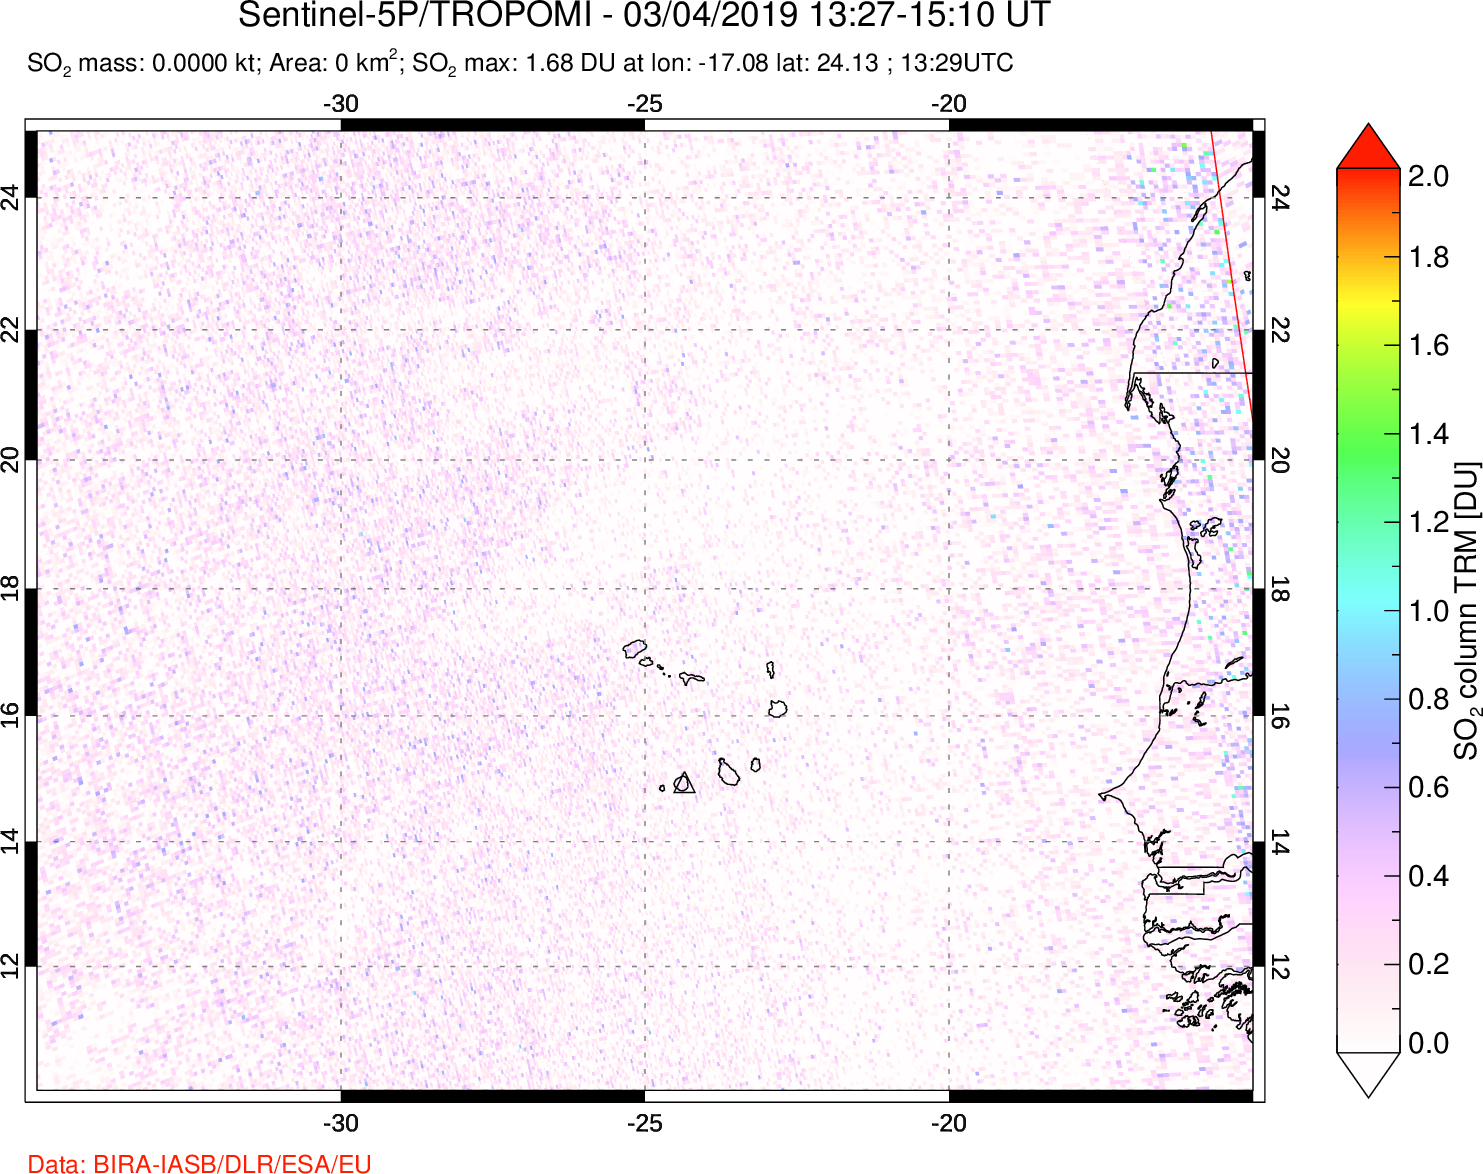 A sulfur dioxide image over Cape Verde Islands on Mar 04, 2019.